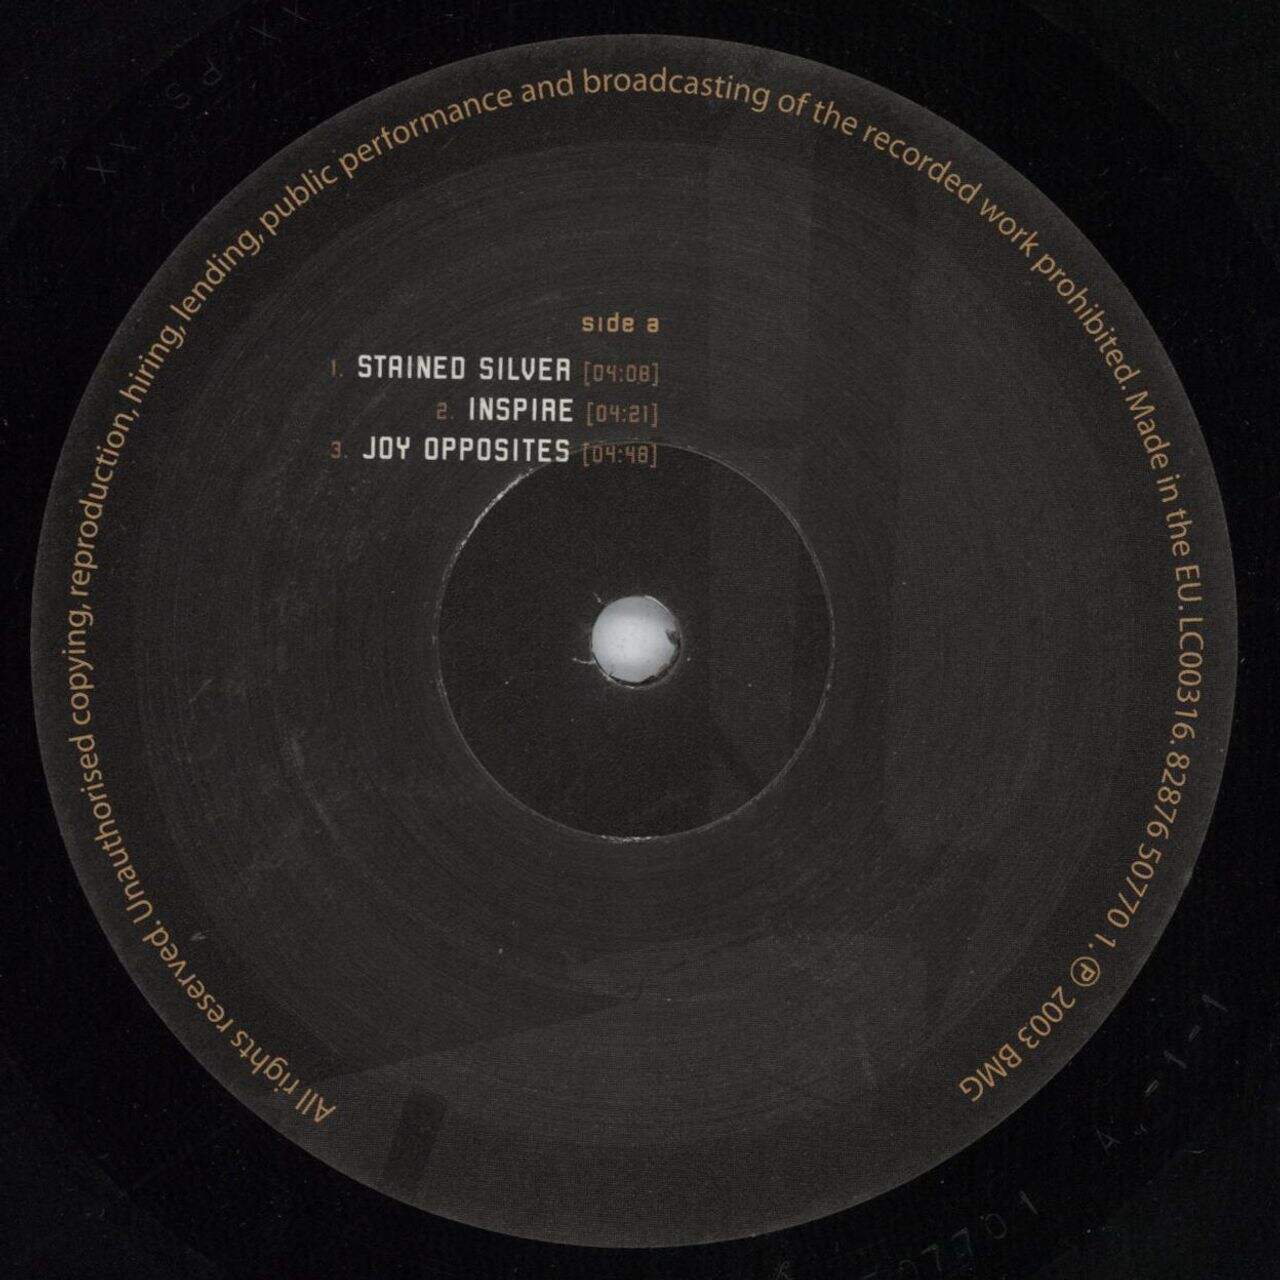 Cave In Antenna UK 2-LP vinyl set